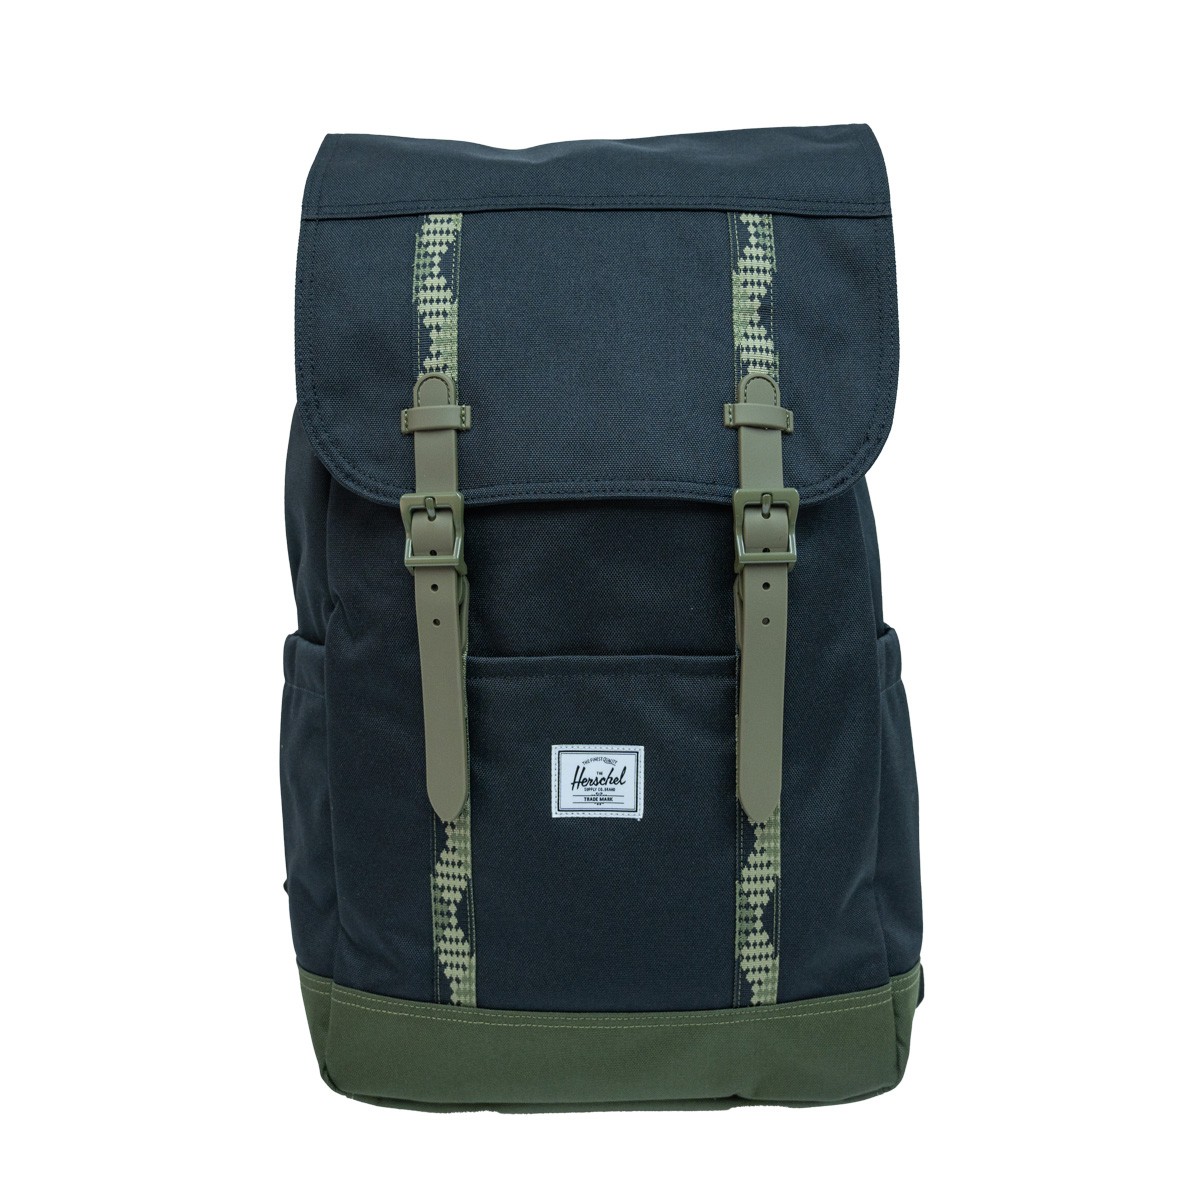 Herschel Retreat Backpack 新版 新增左右側袋 背部快取電腦設計 20升 Black/Ivy Green <旺角店>